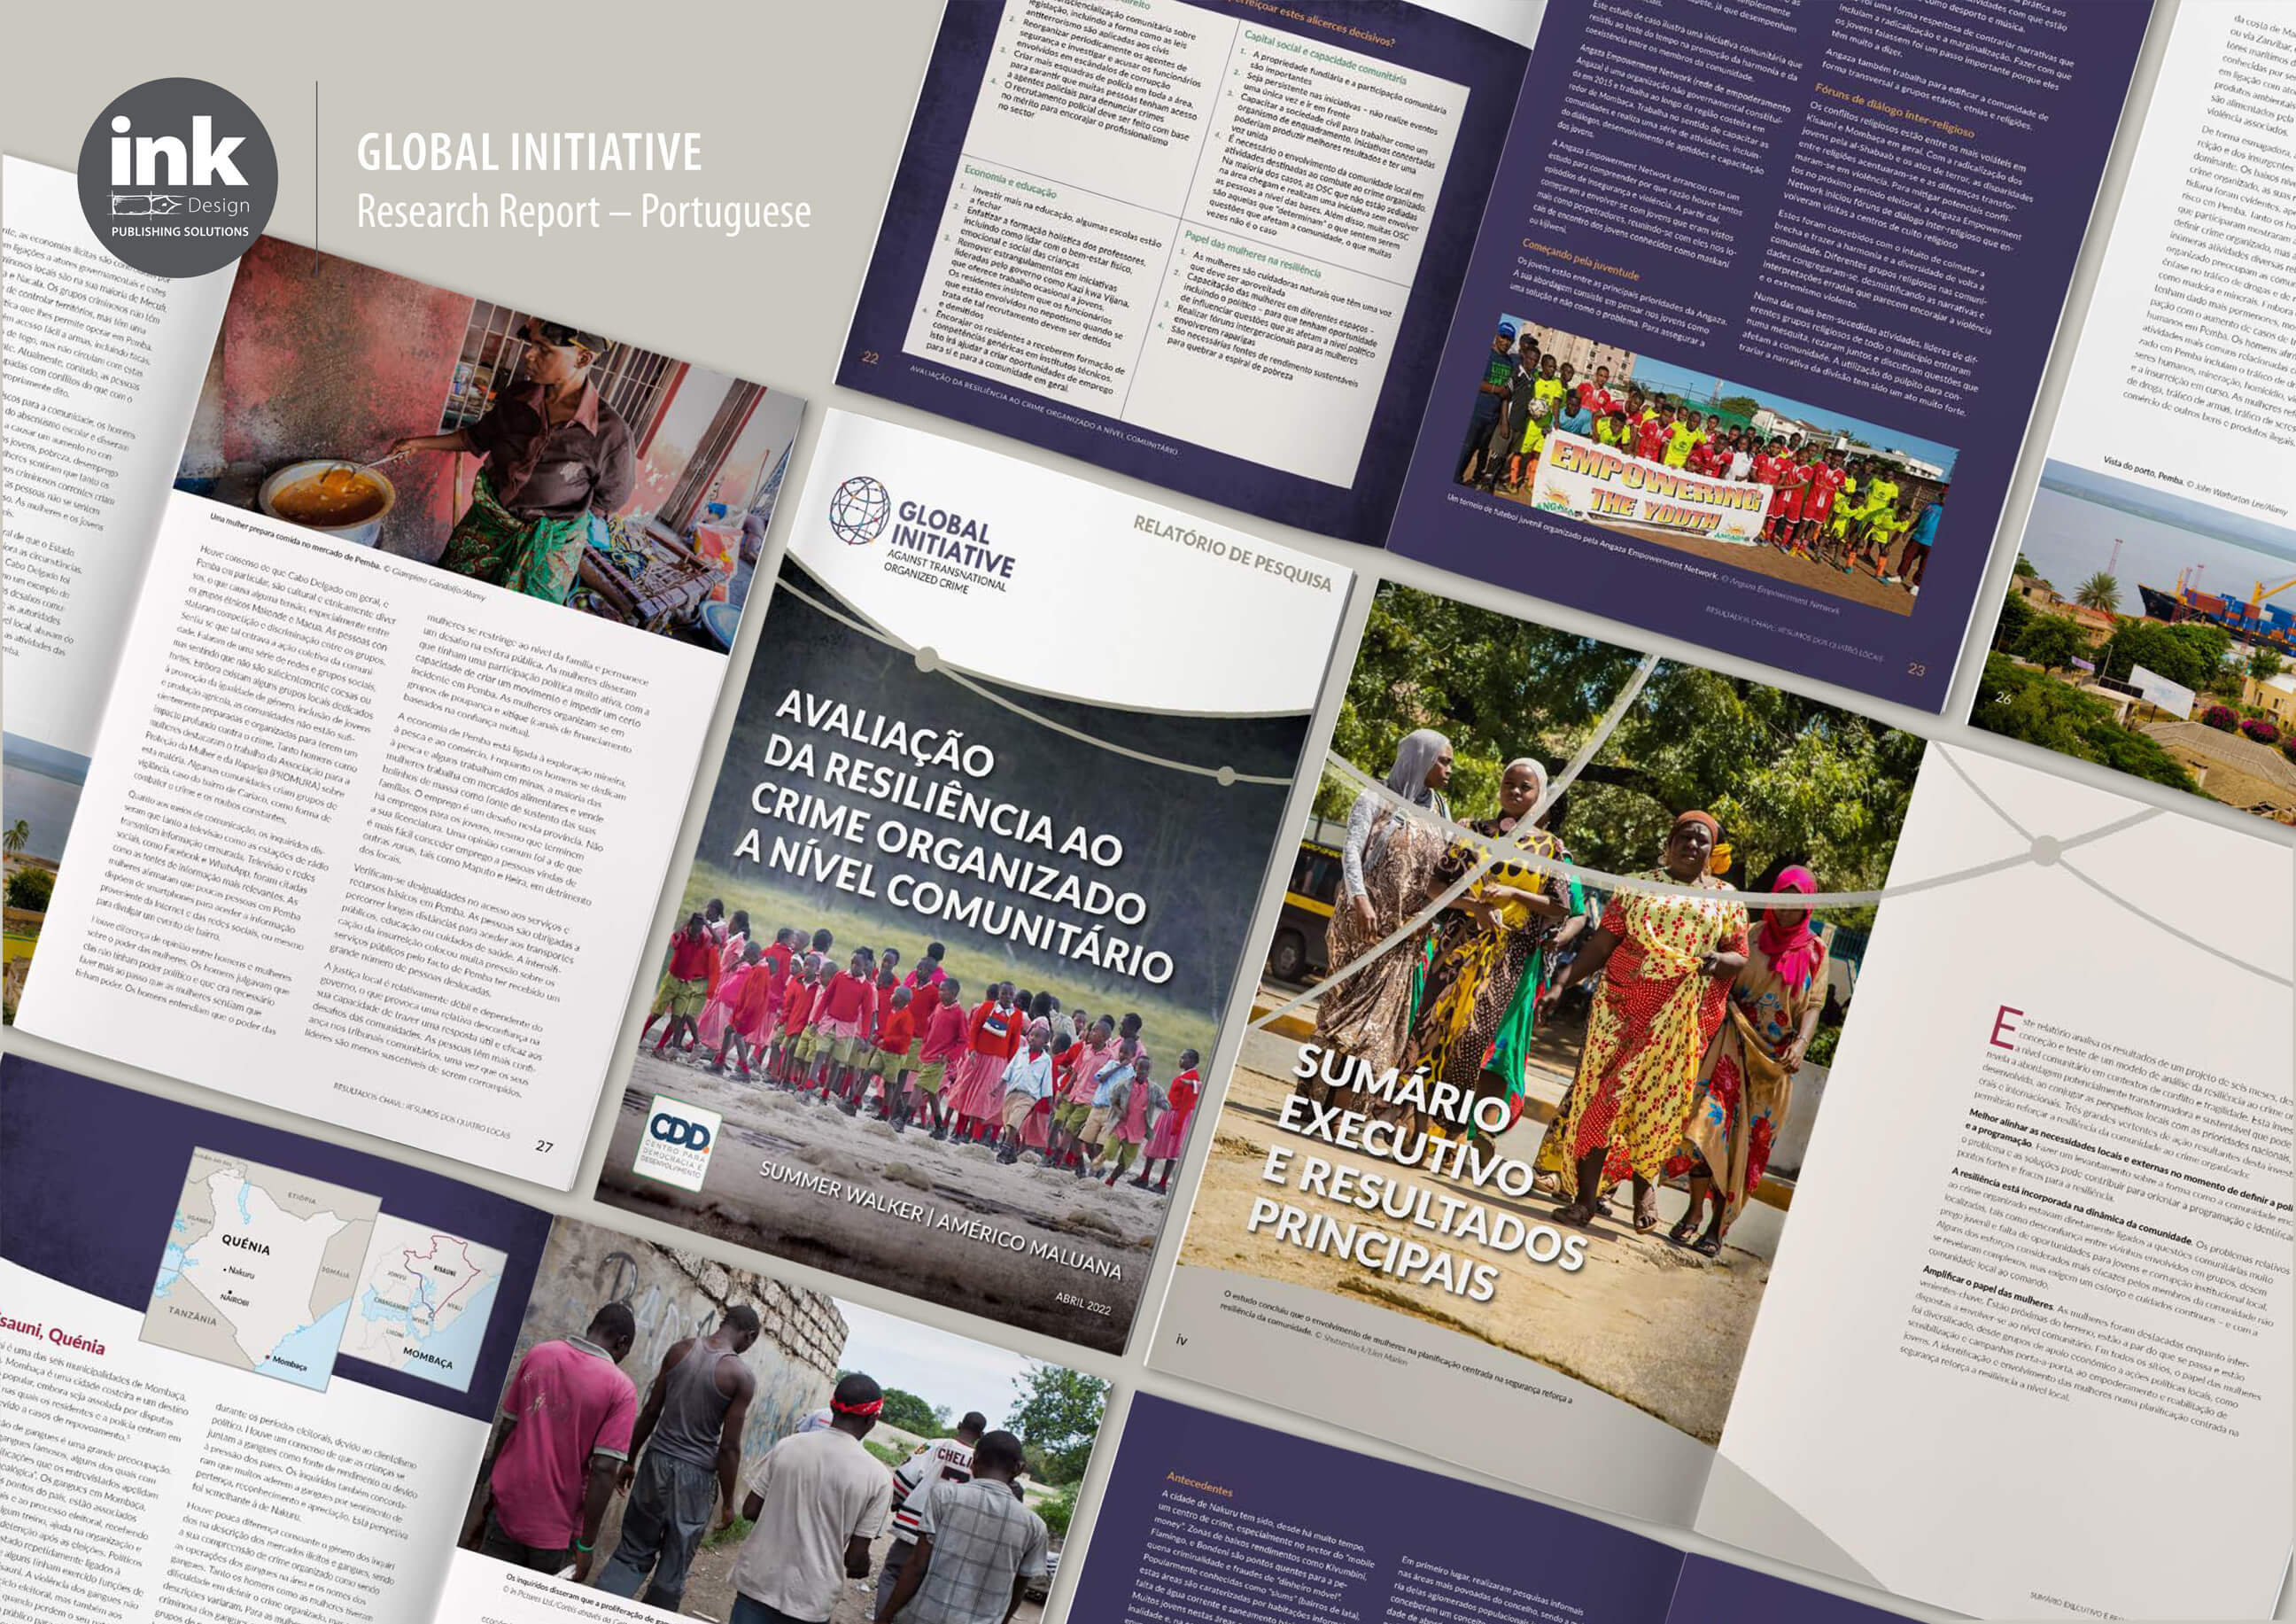 Global Initiative Research Report - Portuguese